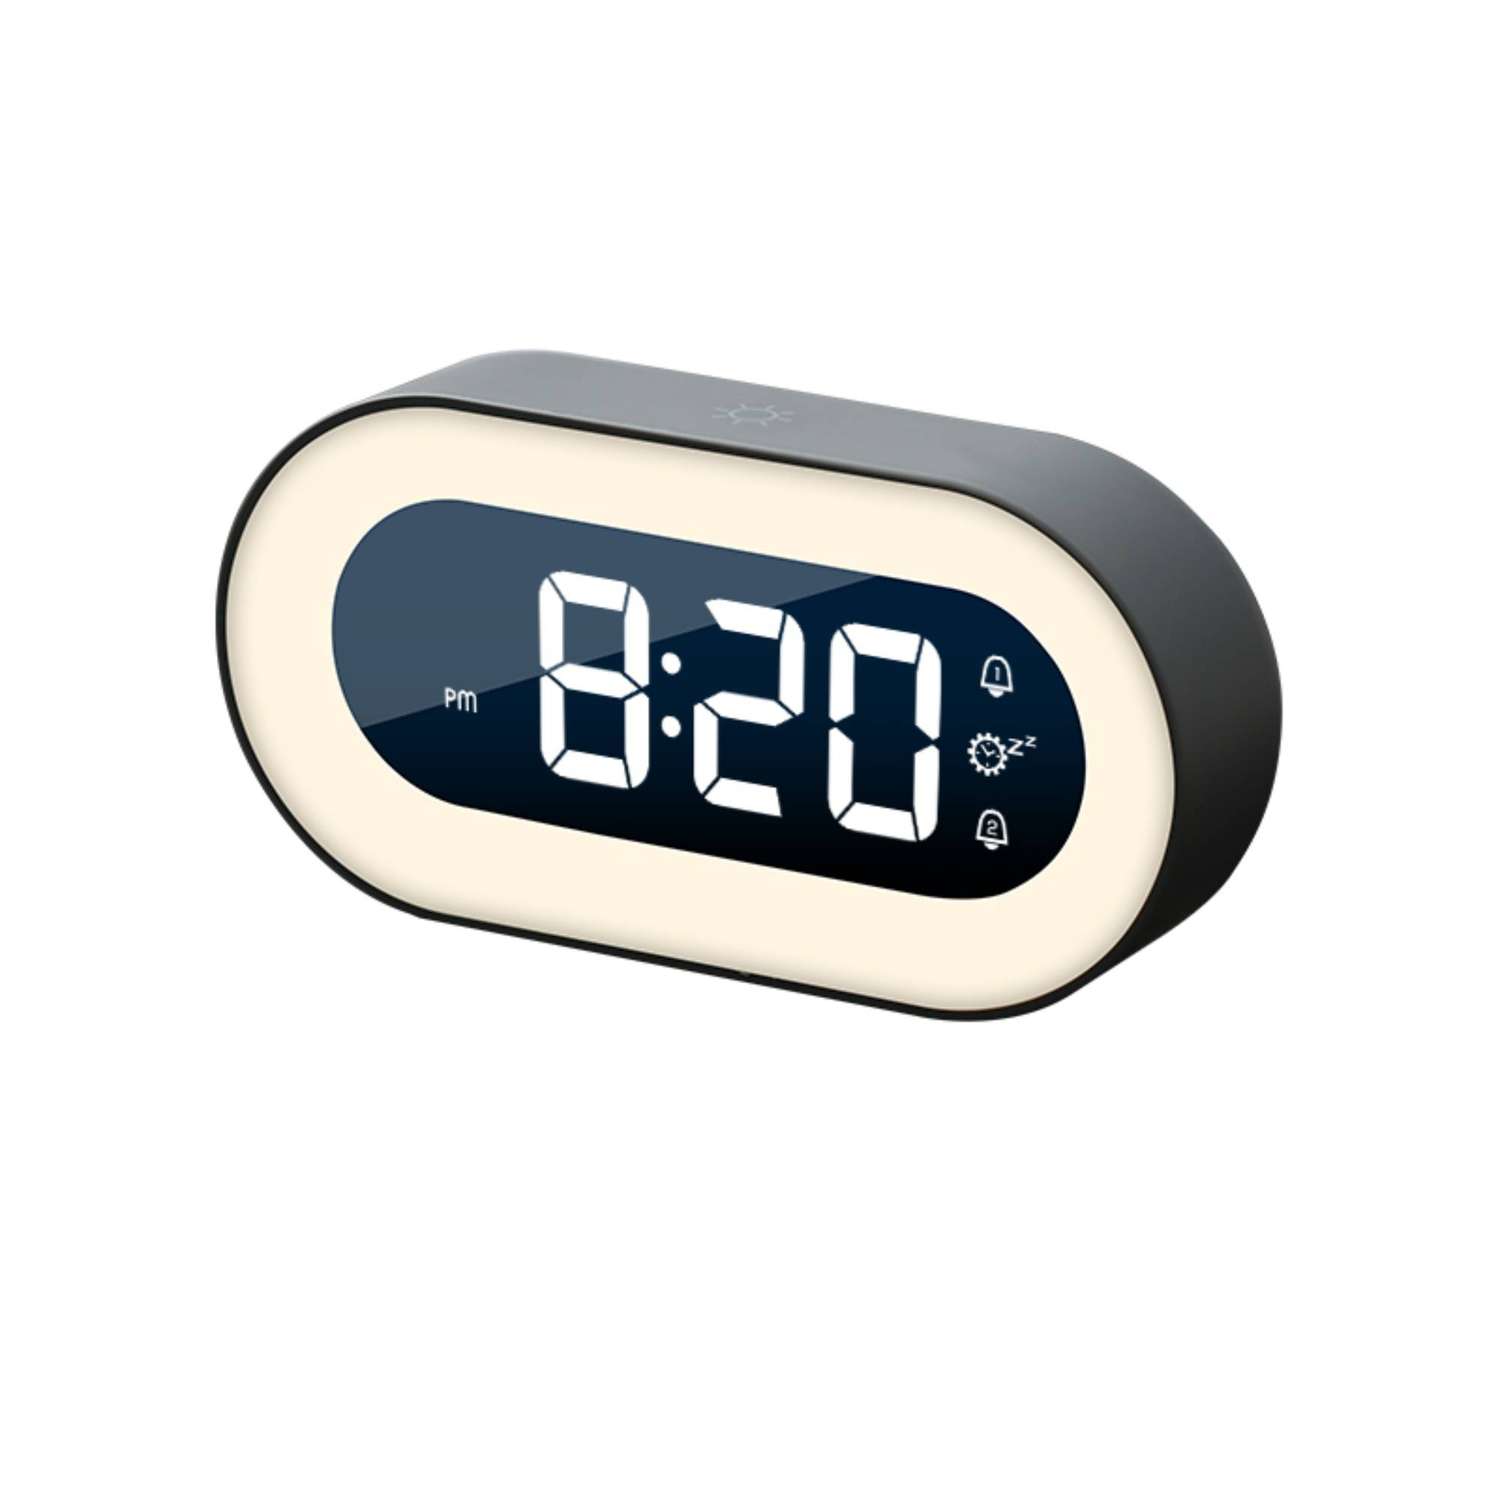 Часы электронные ARTSTYLE с встроенным аккумулятором ночником и будильником черного цвета - фото 1